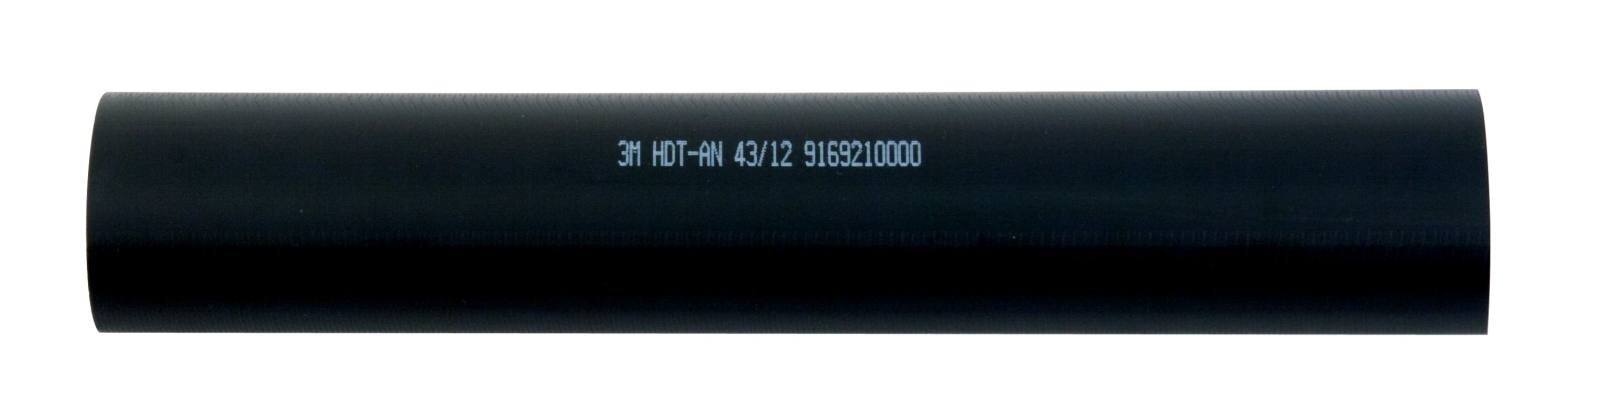  3M HDT-AN Paksuseinäinen lämpökutisteputki liimalla, musta, 43/12 mm, 1 m